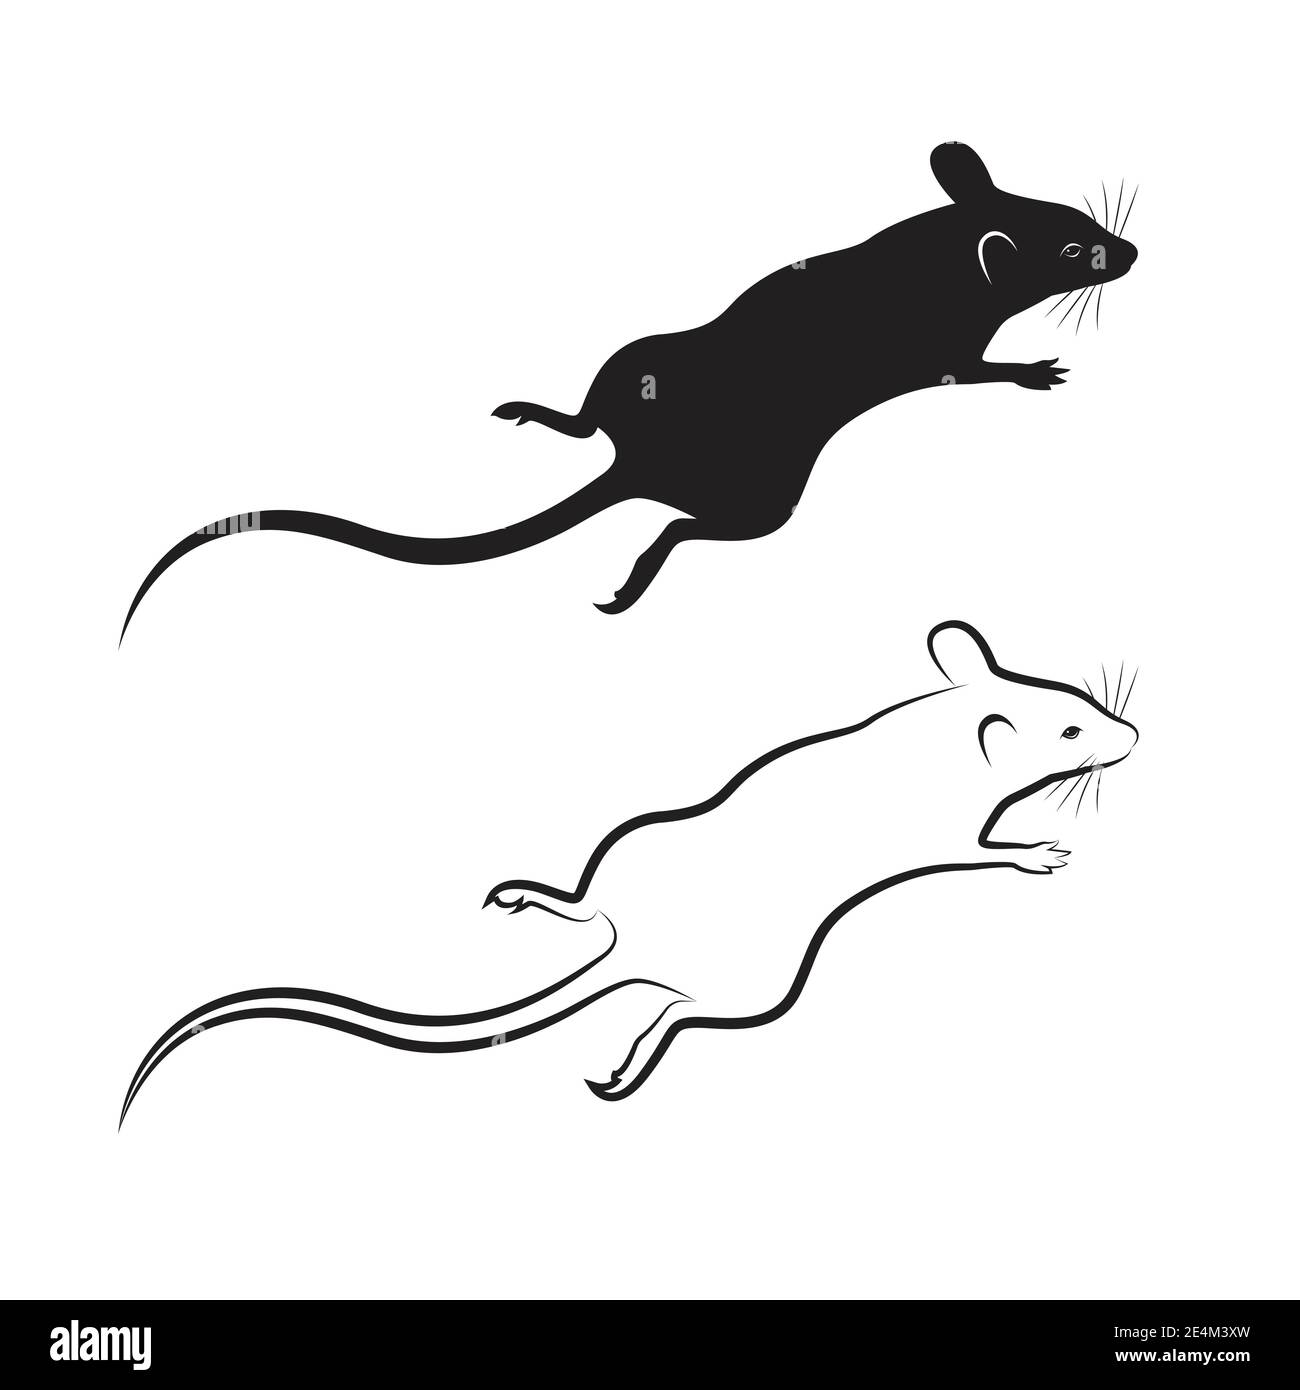 Vecteur de dessin de rat sur fond blanc. Animal mammifère. Illustration vectorielle superposée facile à modifier. Illustration de Vecteur